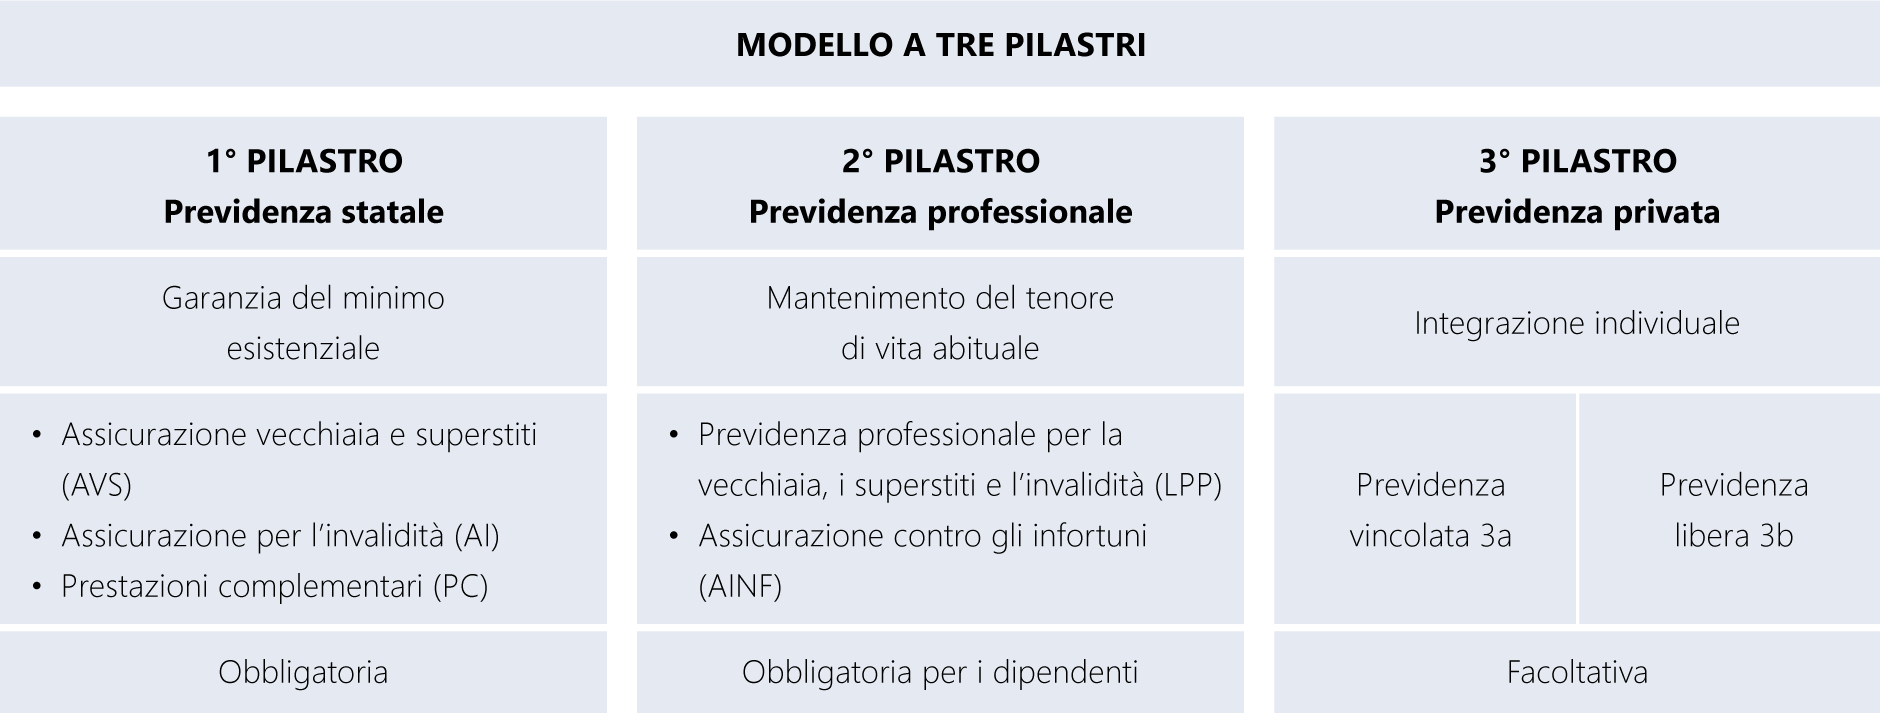 Il primo pilastro è la previdenza statale e comprende AVS, AI e prestazioni complementari. Il secondo pilastro è la previdenza professionale e si compone della parte obbligatoria (LPP, LAINF) e della parte sovraobbligatoria. Il terzo pilastro è previdenza privata. Si compone di previdenza vincolata, pilastro 3a, e previdenza gratuita, ossia il pilastro 3b.